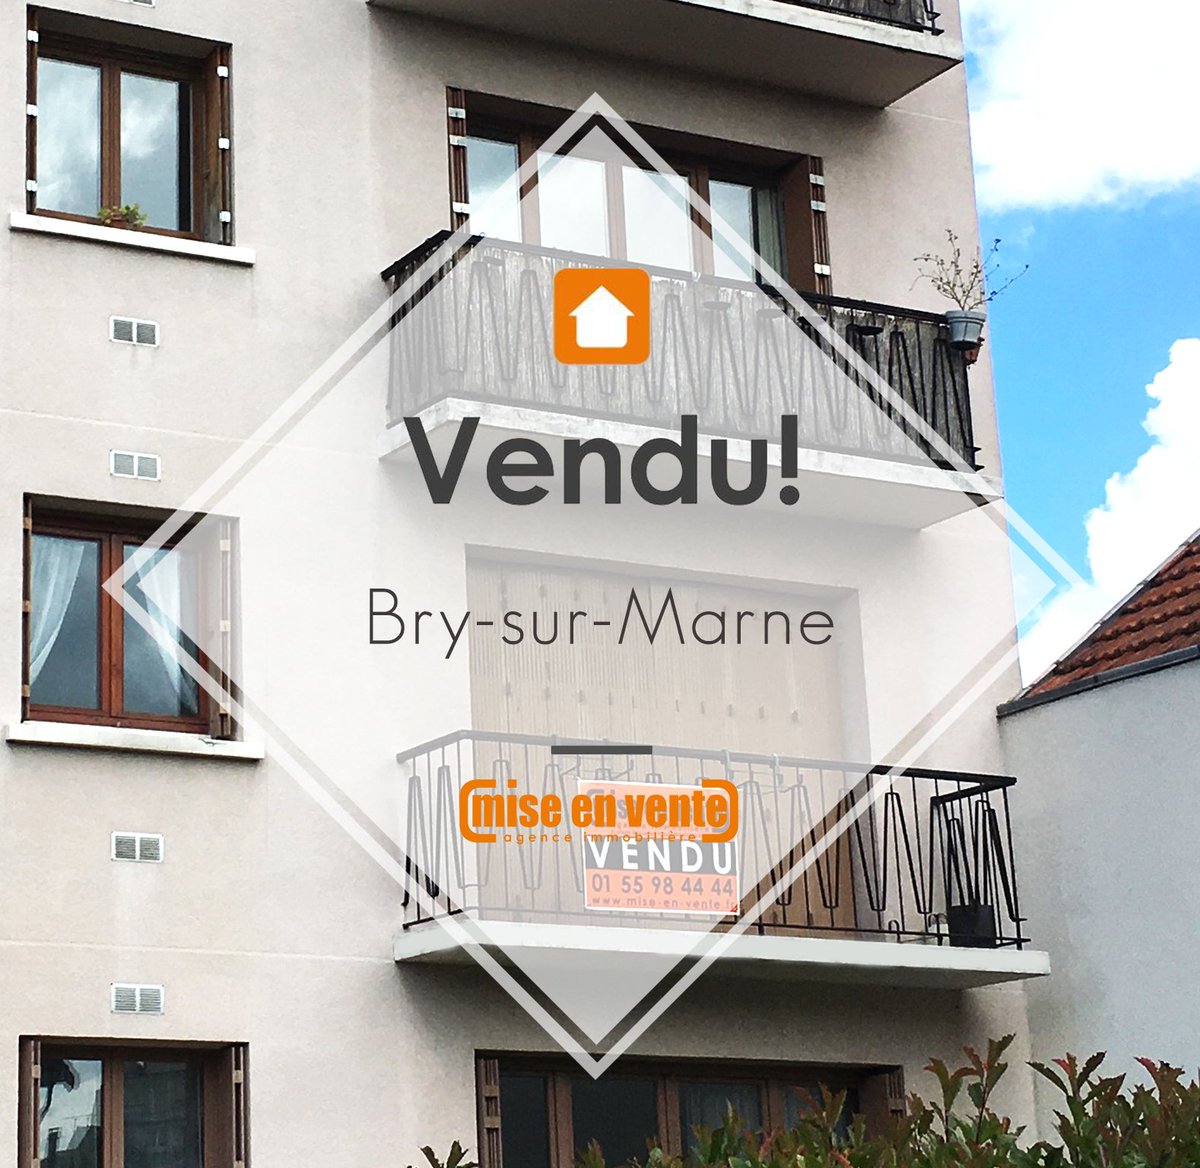 Appartement vendu dans le centre-ville de Bry-sur-Marne. Bravo à Nelly !
#immo #vendu #misenvente #immobilier